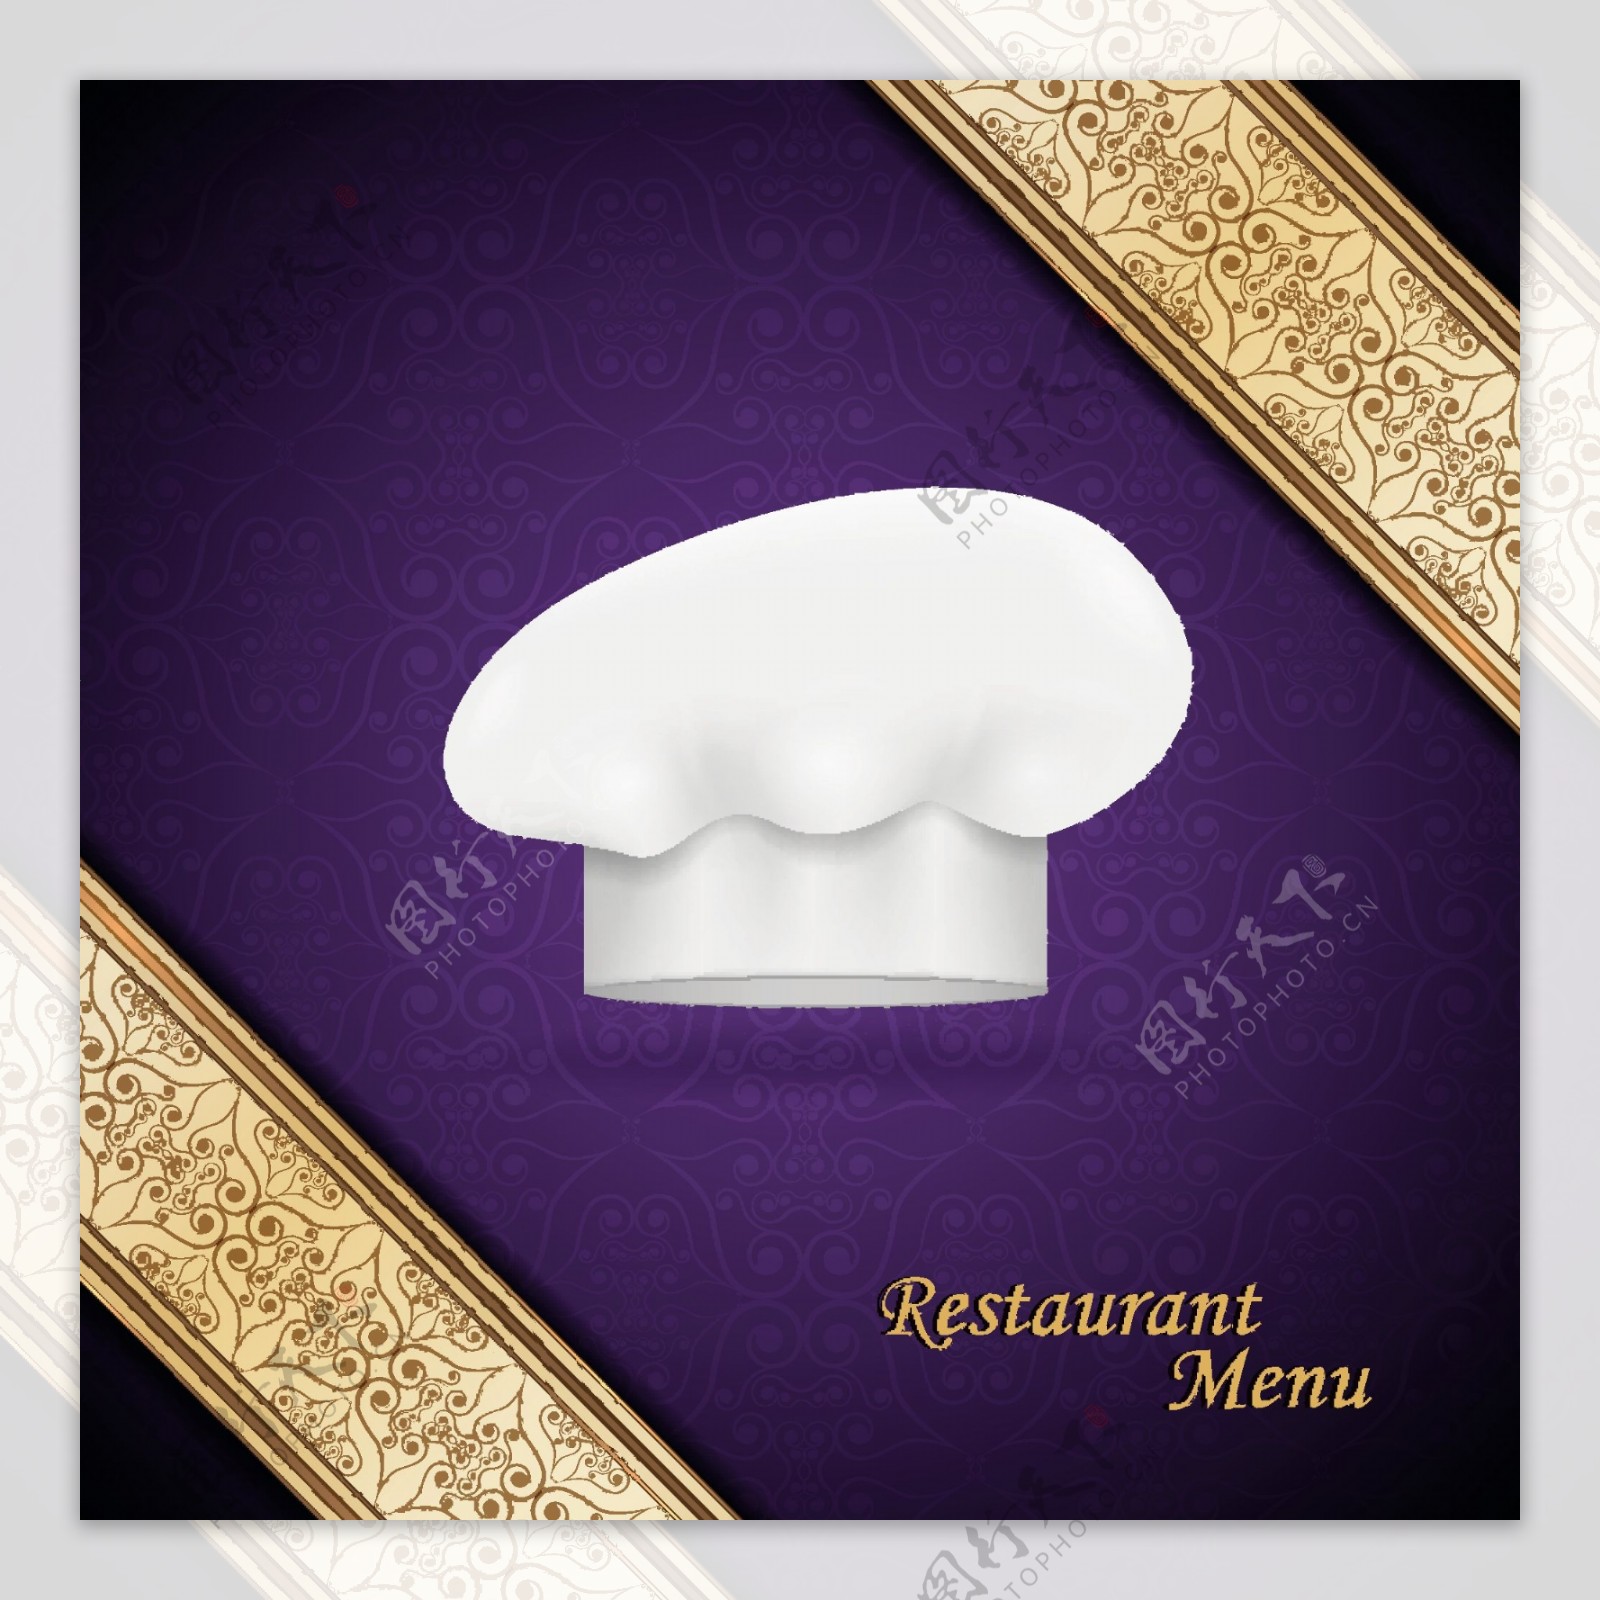 厨师的帽子和餐馆的菜单封面设计矢量图03